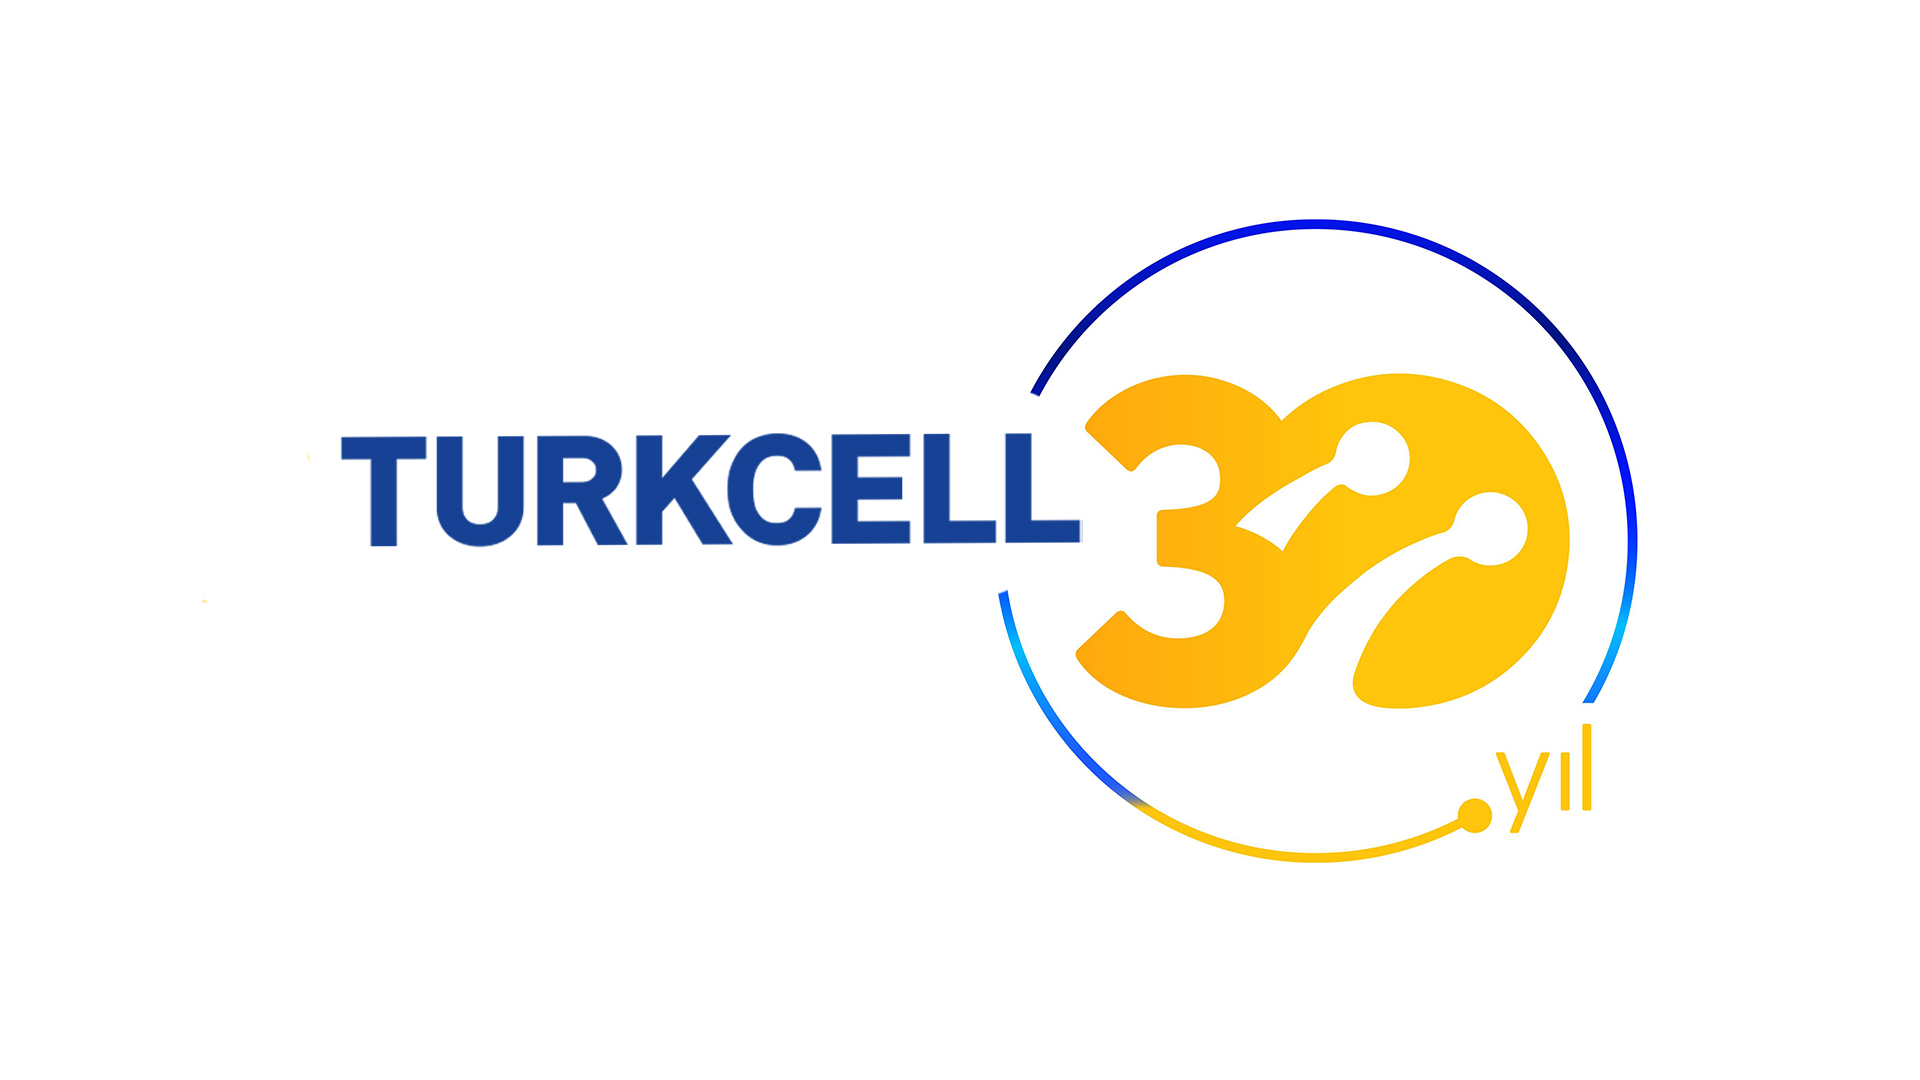 Turkcell 30. Yılını kutluyor.